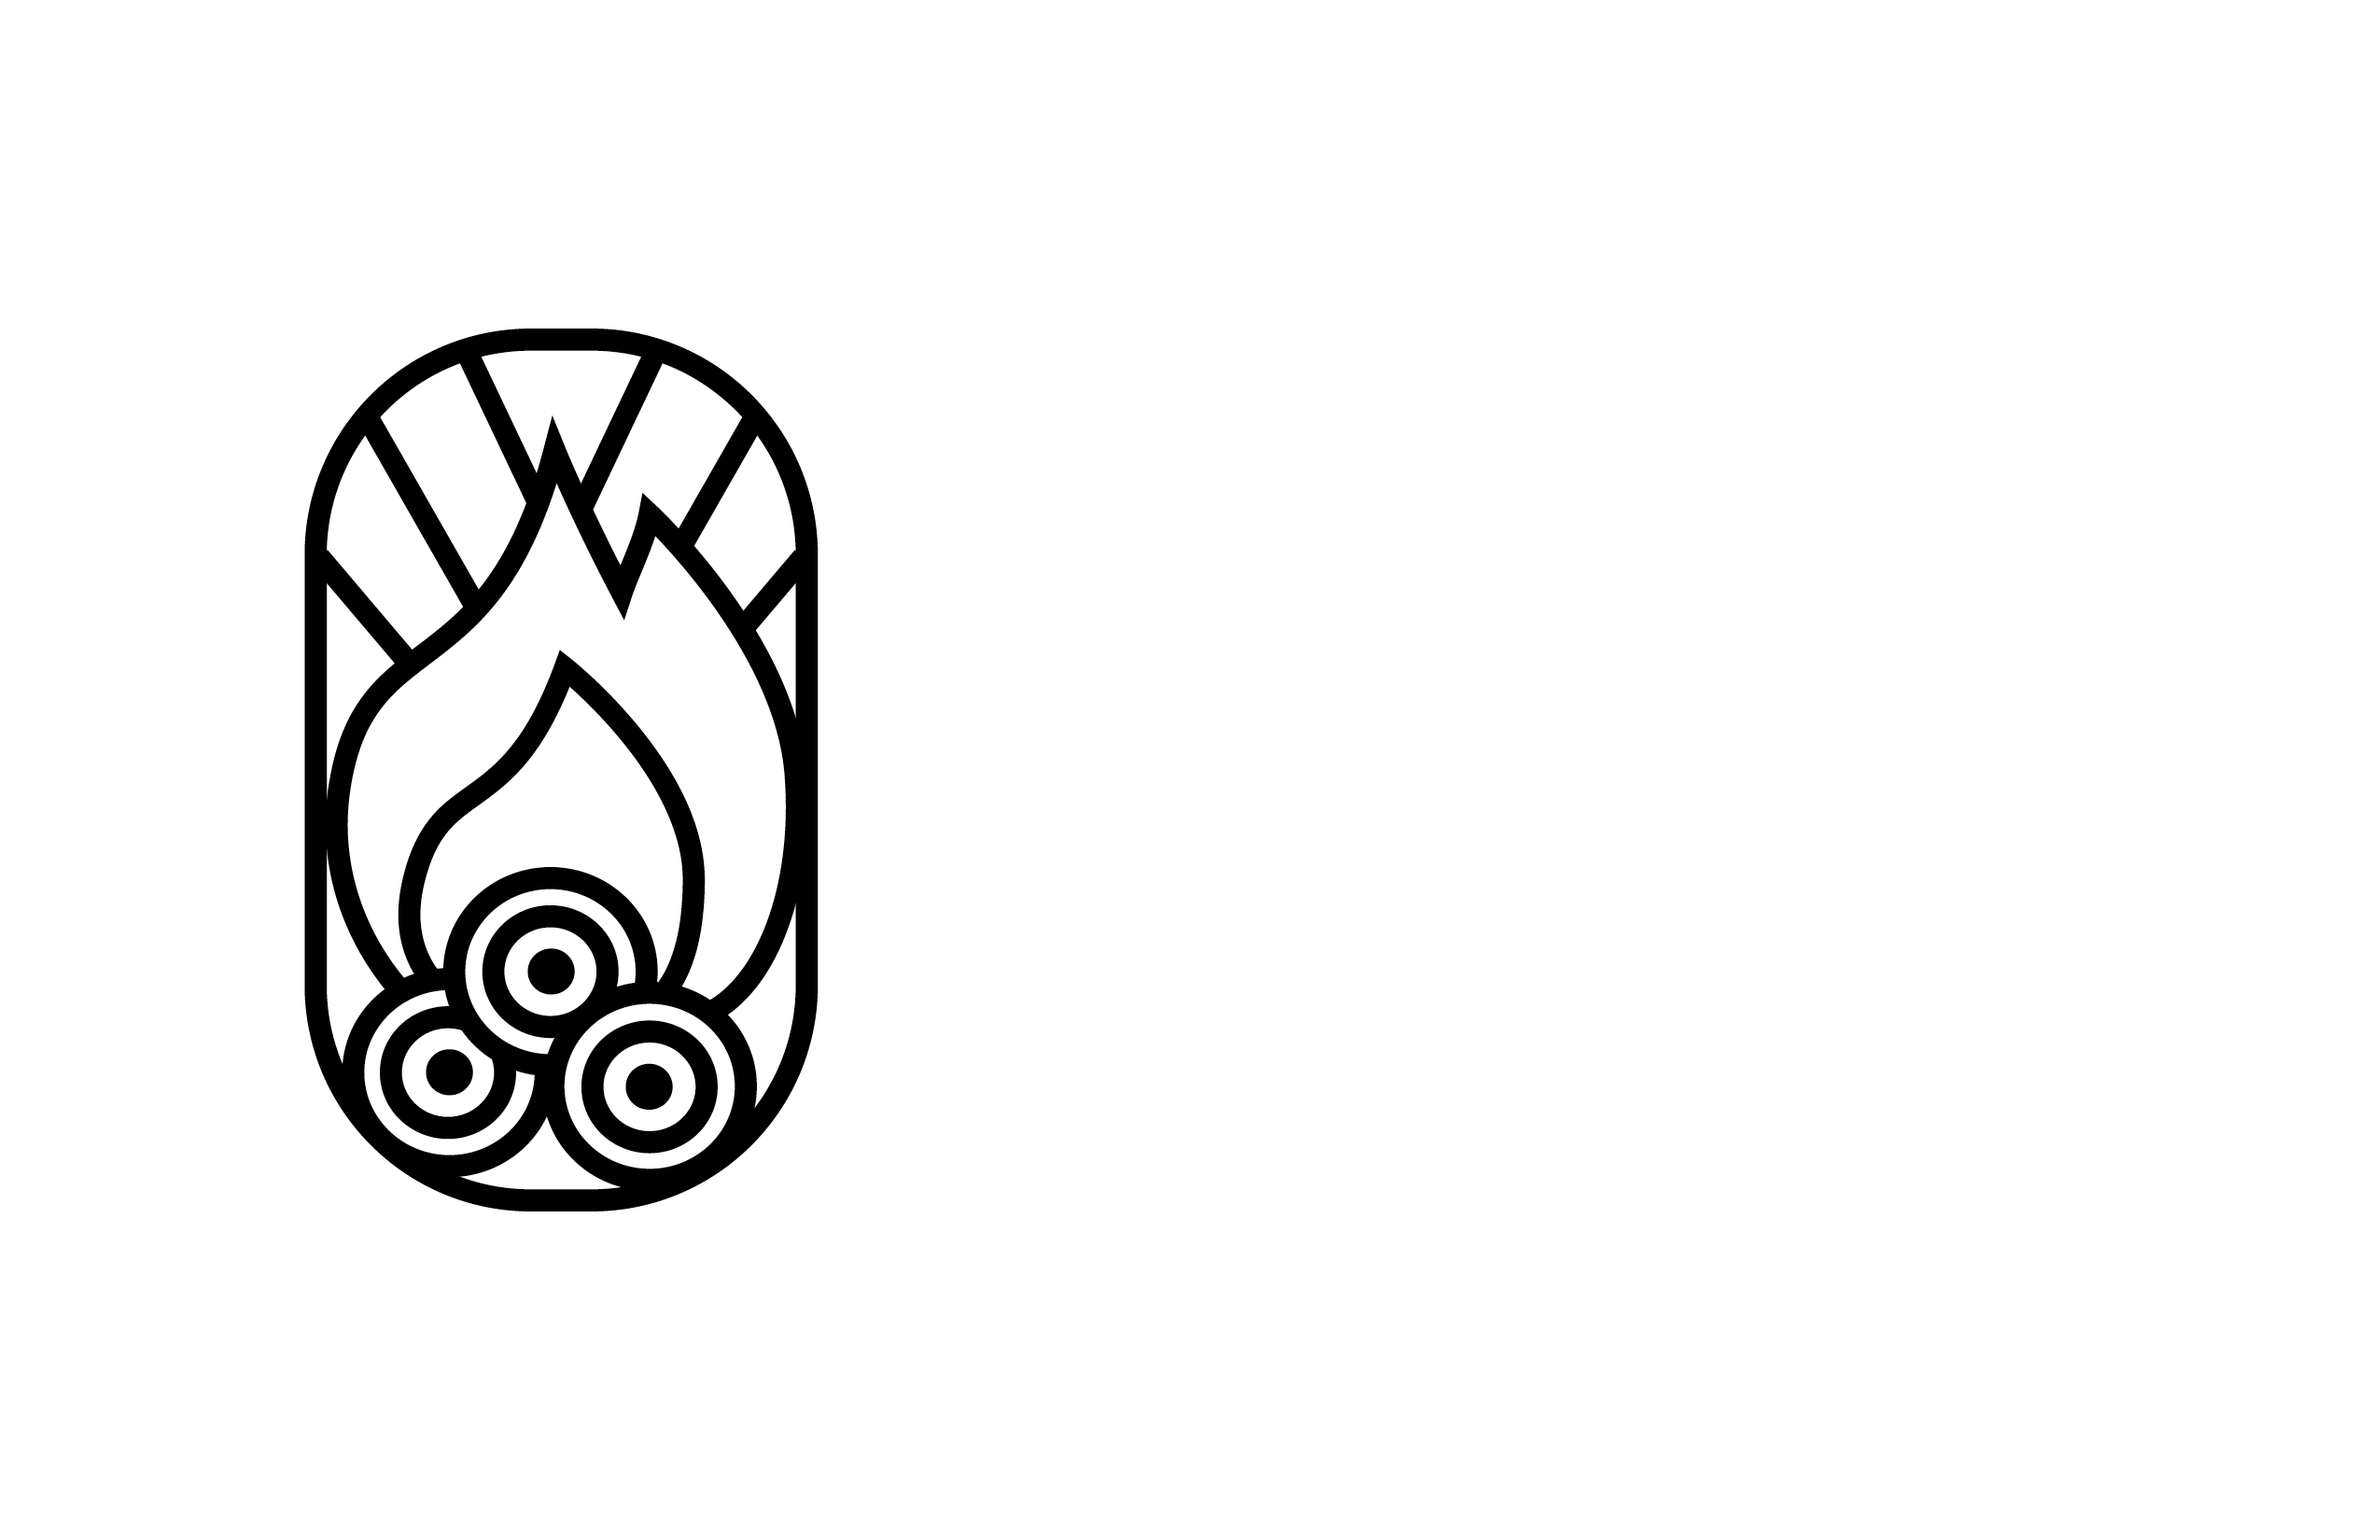 Bonfire Publishing